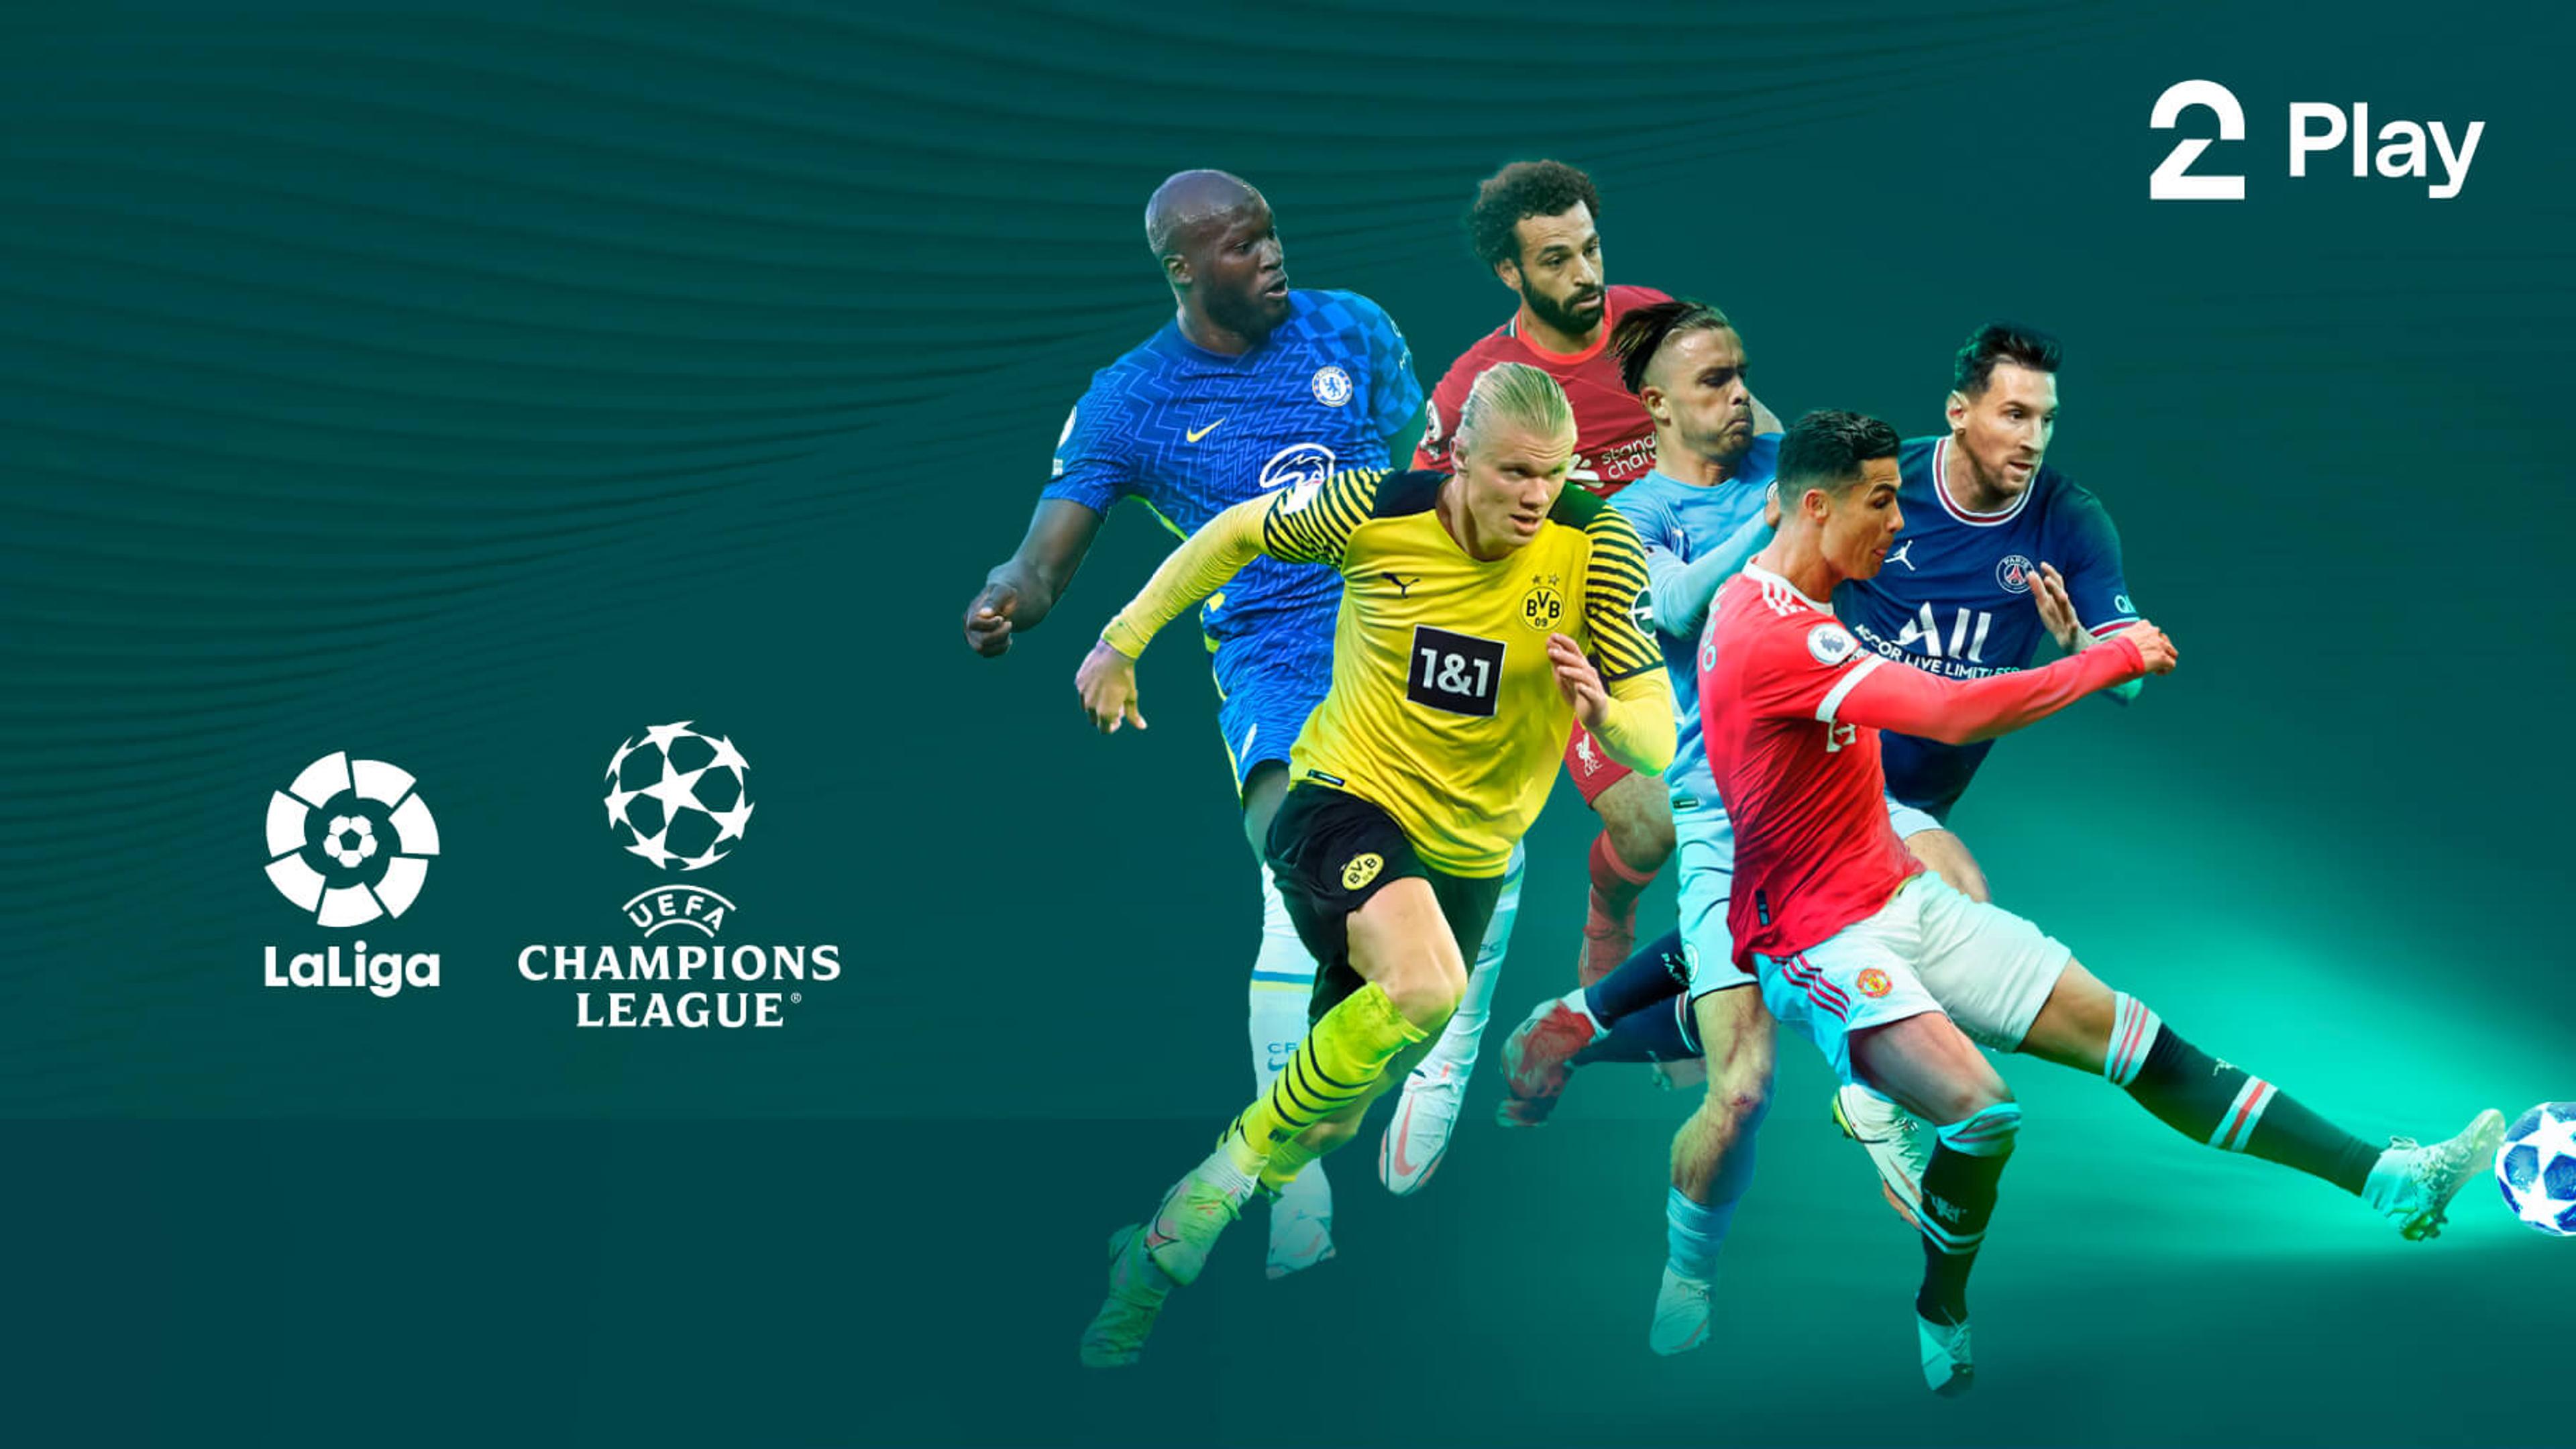 Bilde av spillere fra UEFA Champions League og LaLiga